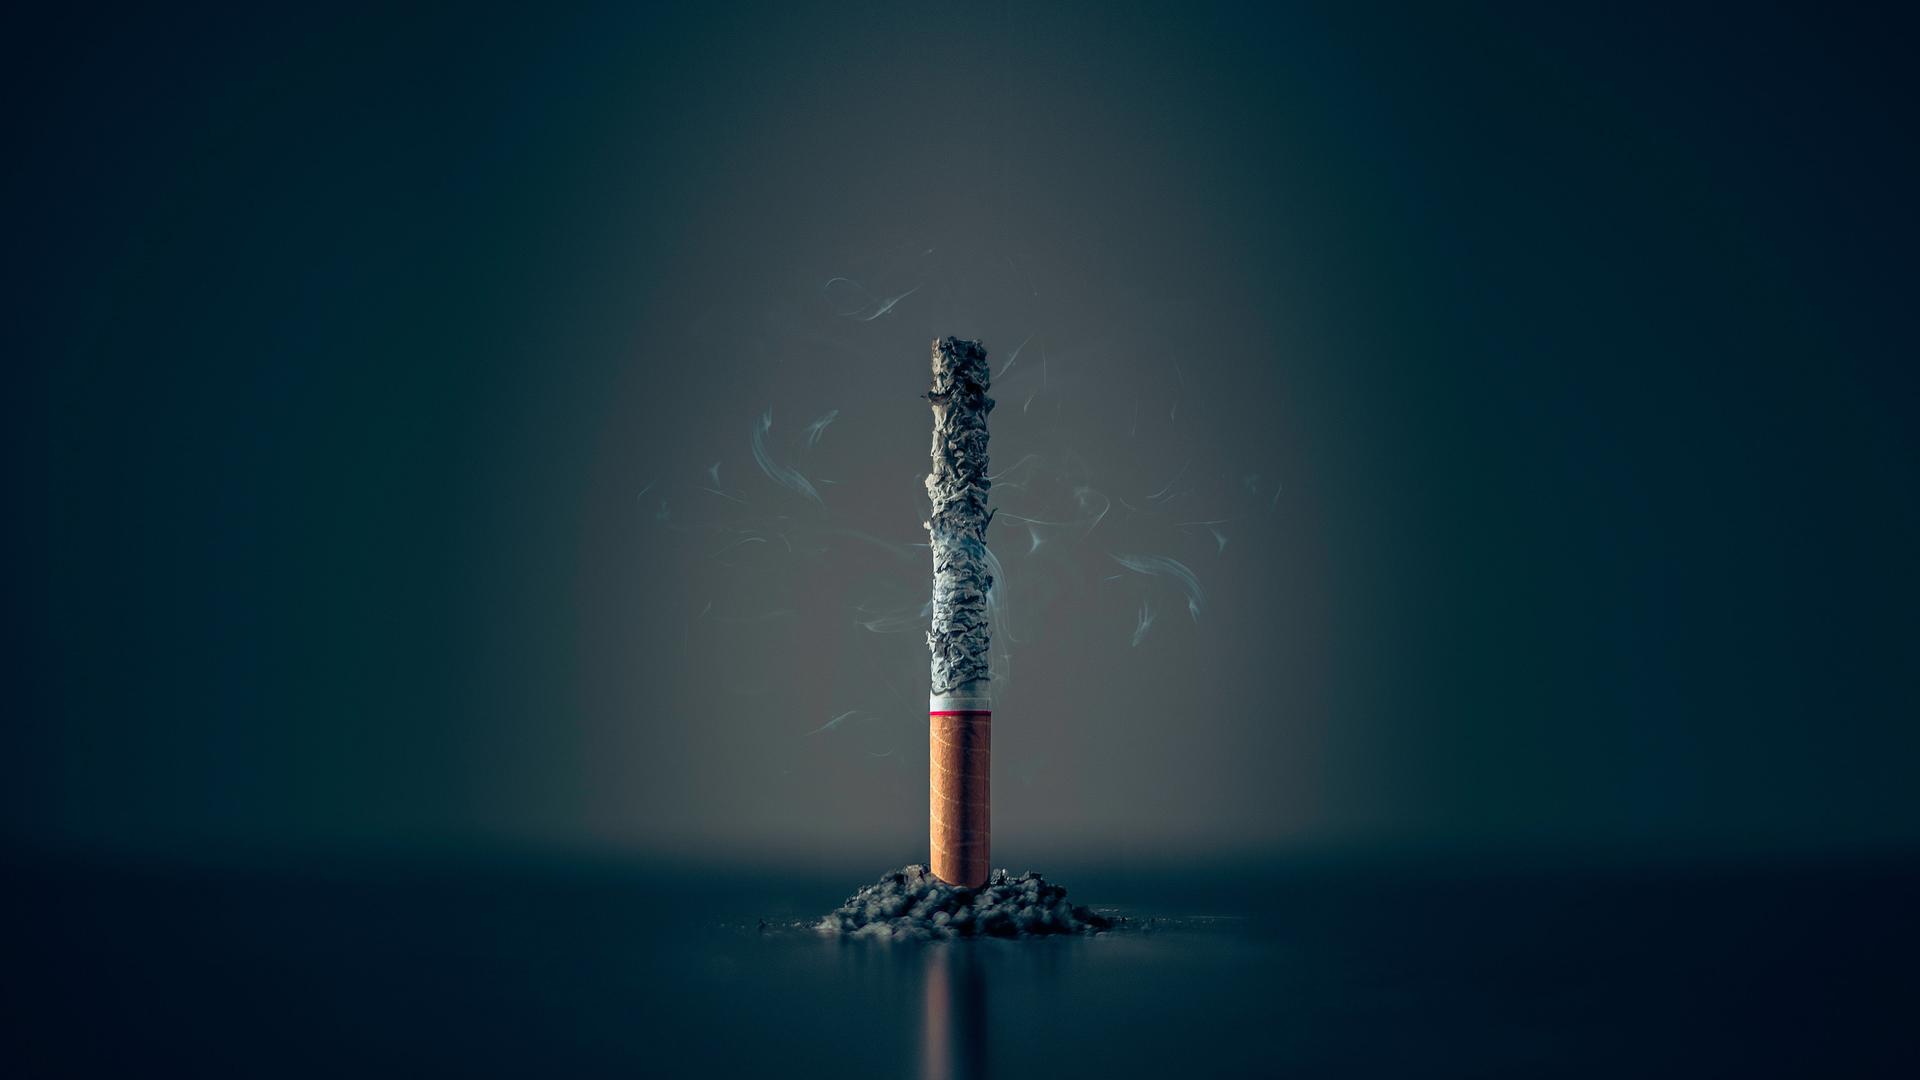 Eine einzelne Zigarette steht heruntergebrannt bis auf den Filter und noch qualmend aufrecht vor einem dunklen Hintergrund.